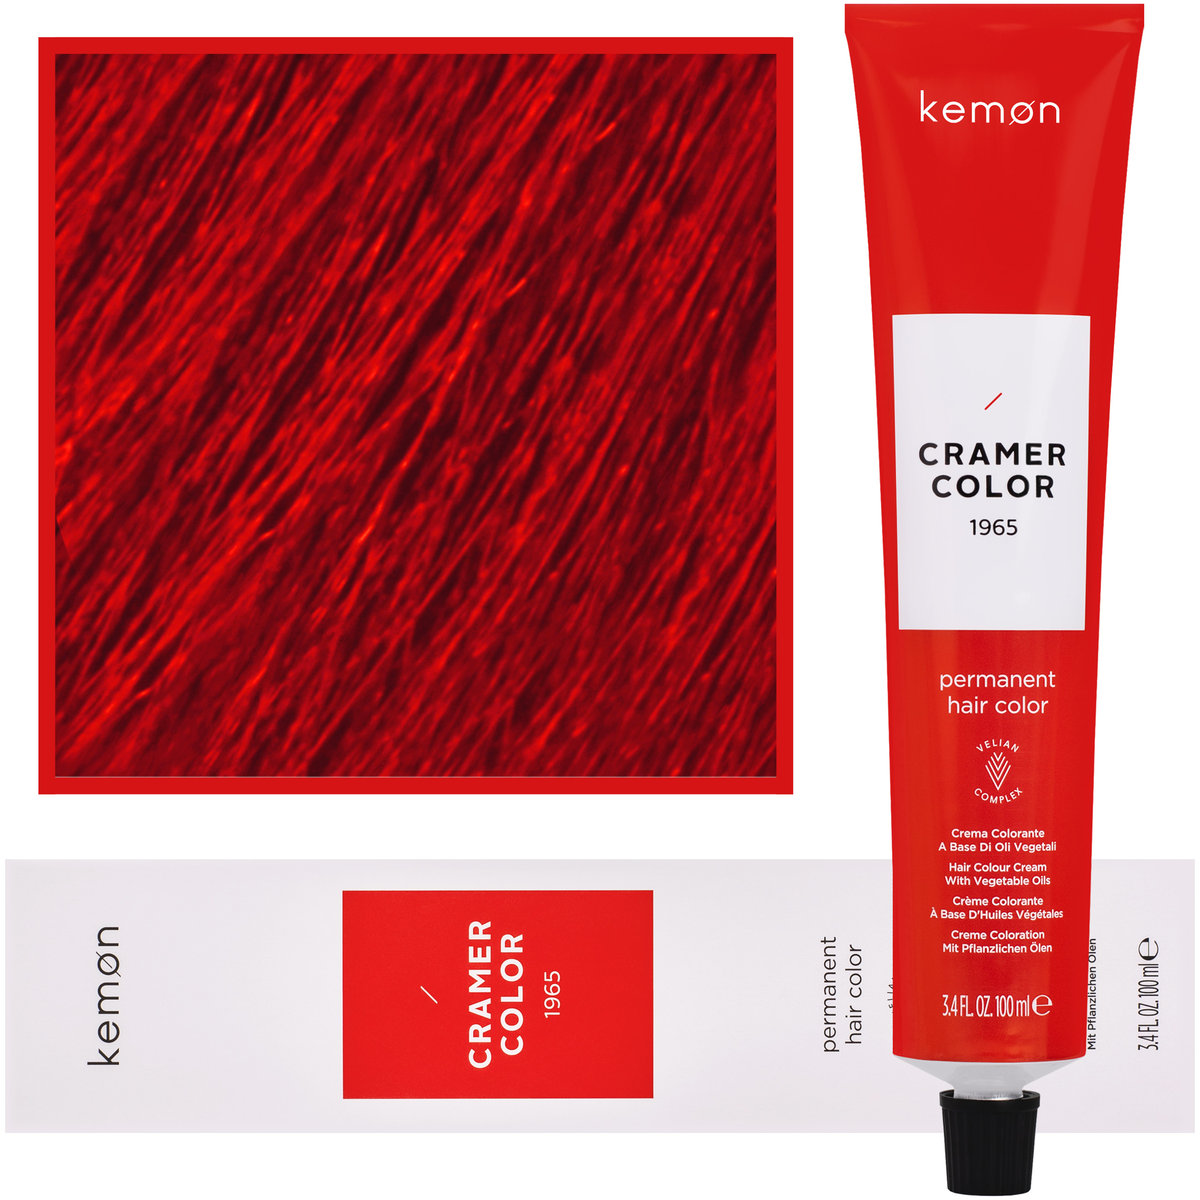 Zdjęcia - Farba do włosów Kemon , Cramer Color 100ml kremowa  z olejkami roślinnymi CL 